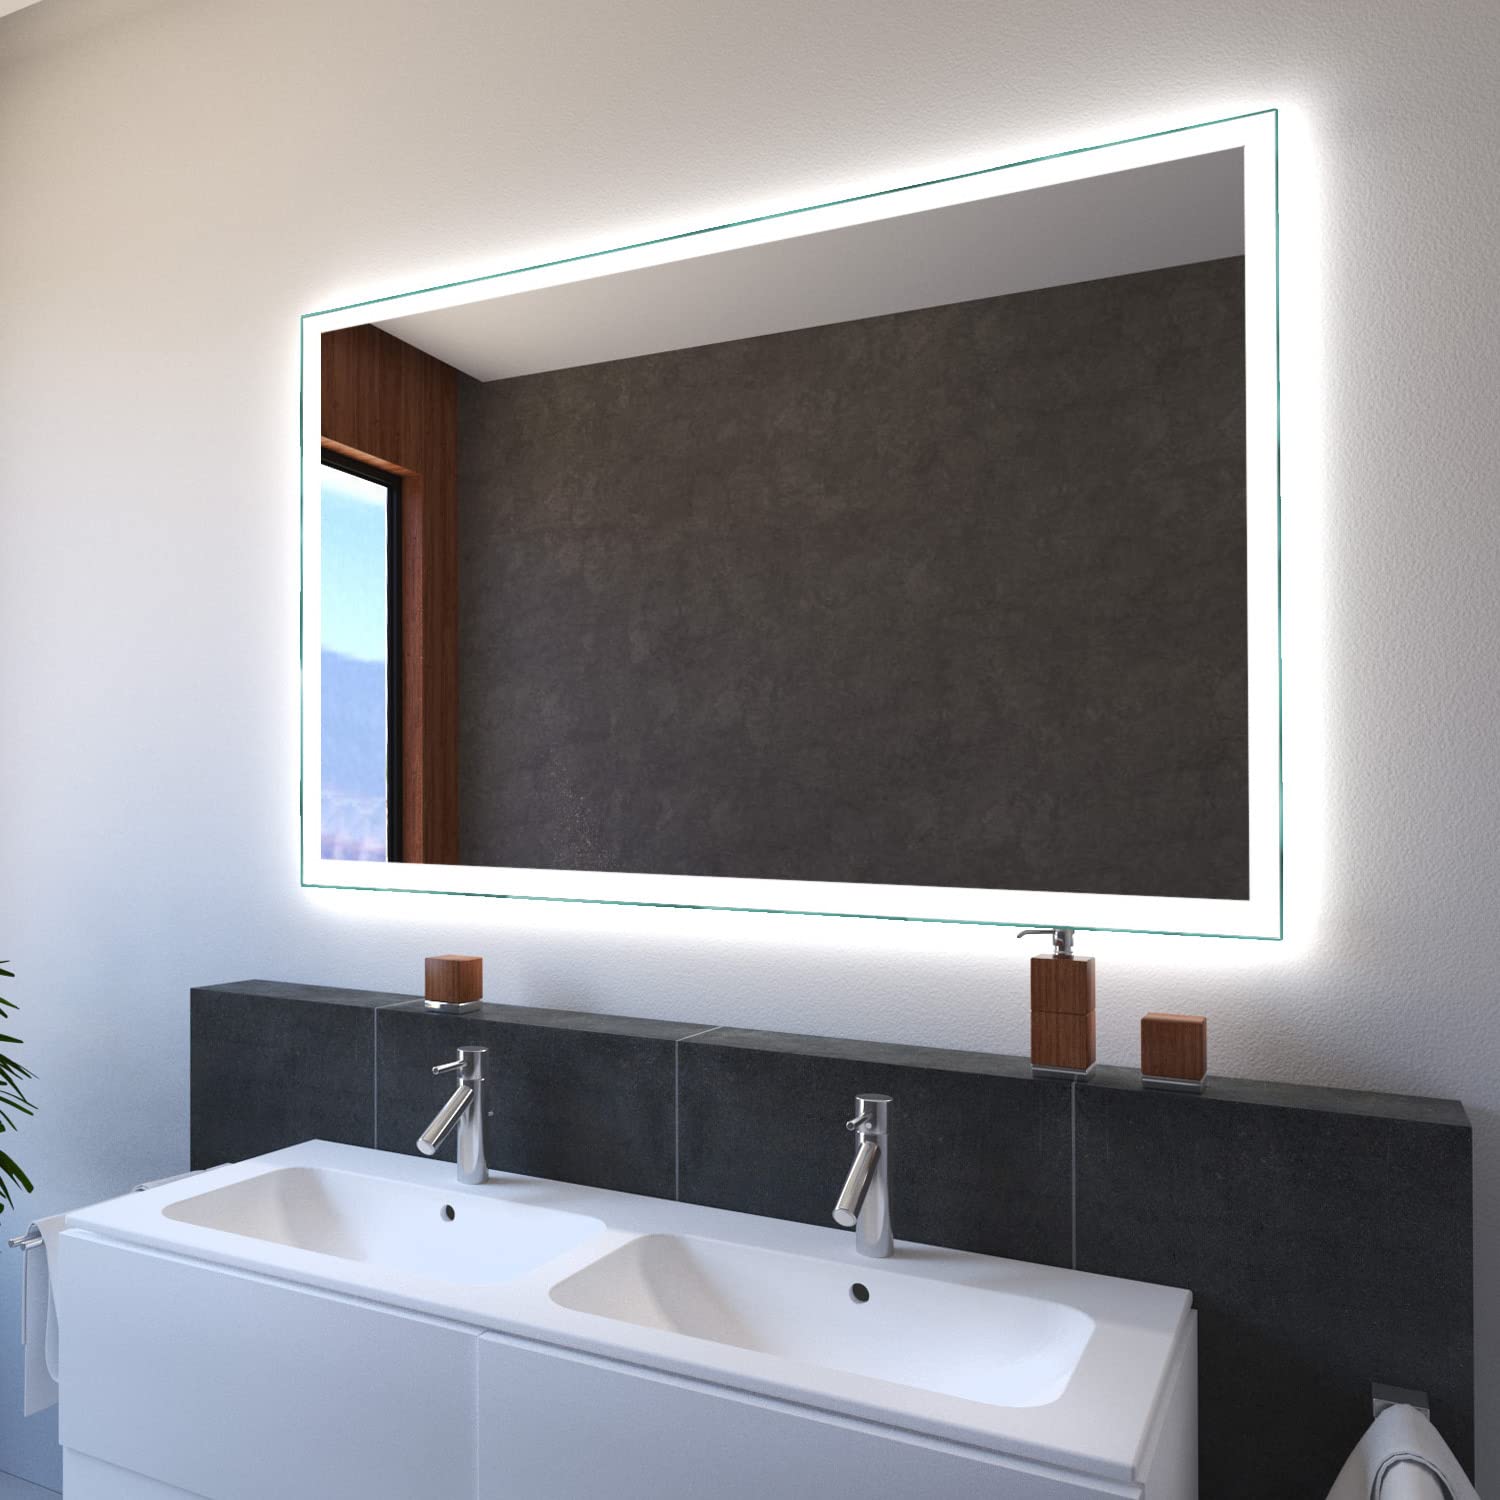 SARAR Badspiegel mit LED Beleuchtung 110x70 cm Made in Germany Designo MA4110 Badspiegel Spiegel mit Beleuchtung Badezimmerspiegel nach-auf Maß